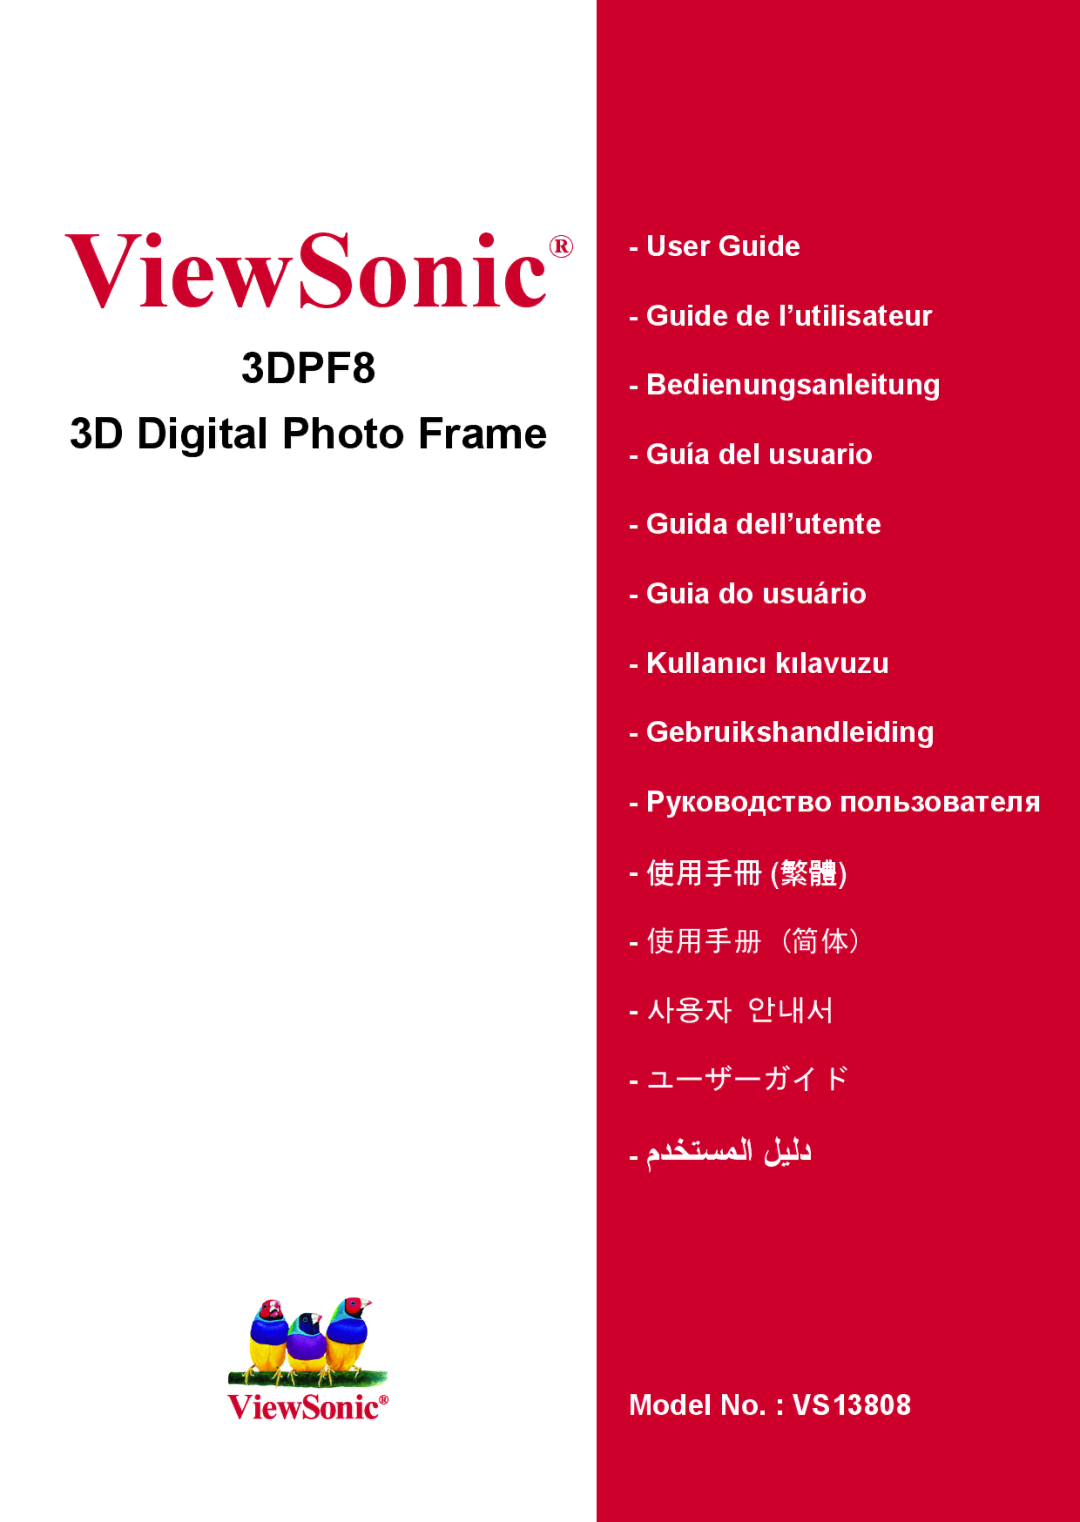 ViewSonic VS13808 manual ViewSonic, 3D Digital Photo Frame 